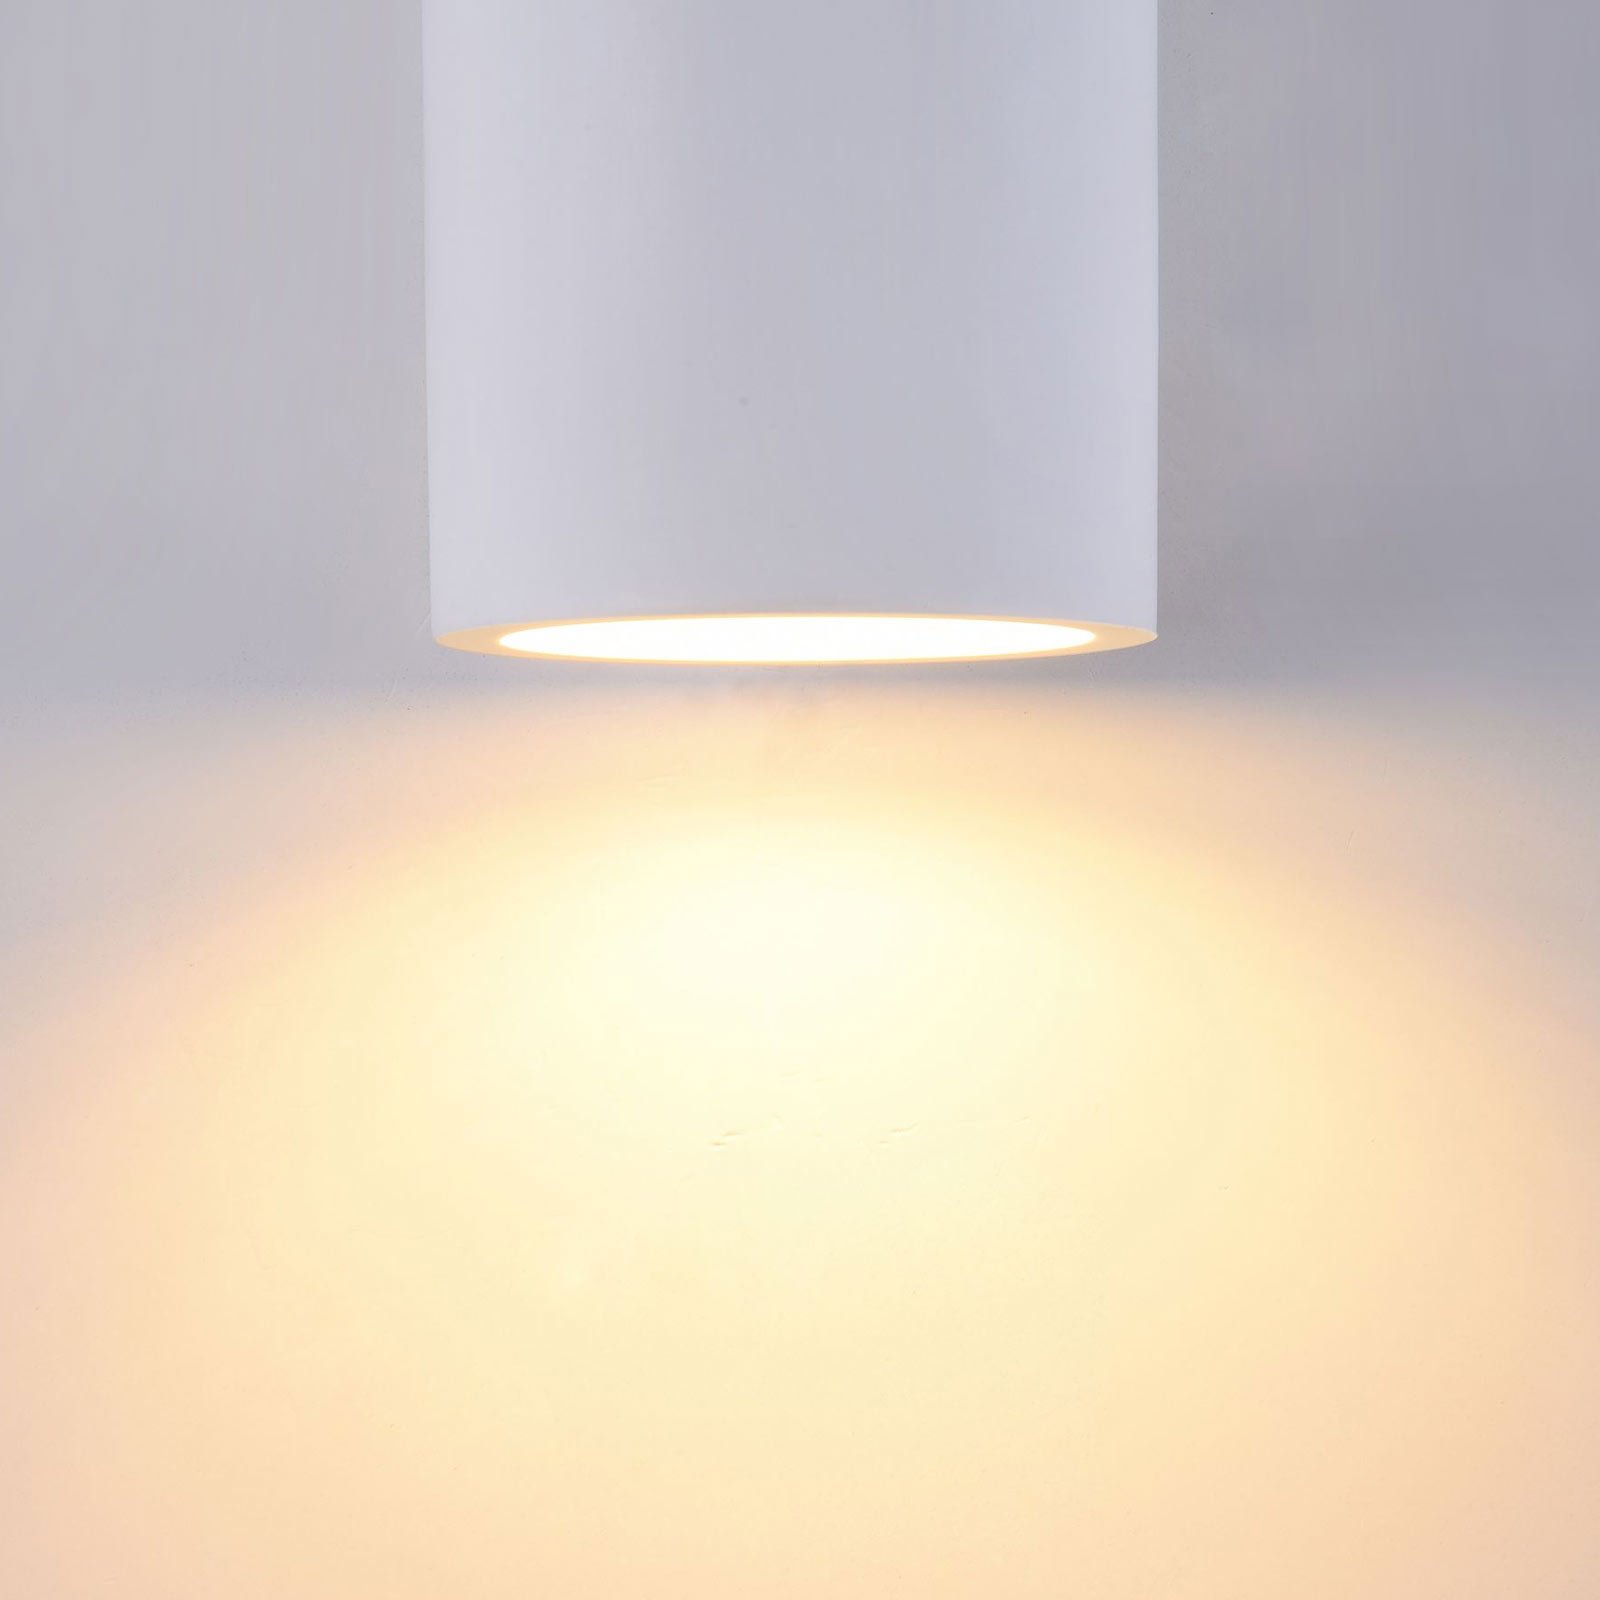 Lampa ścienna Parma z gipsu, 8x20 cm